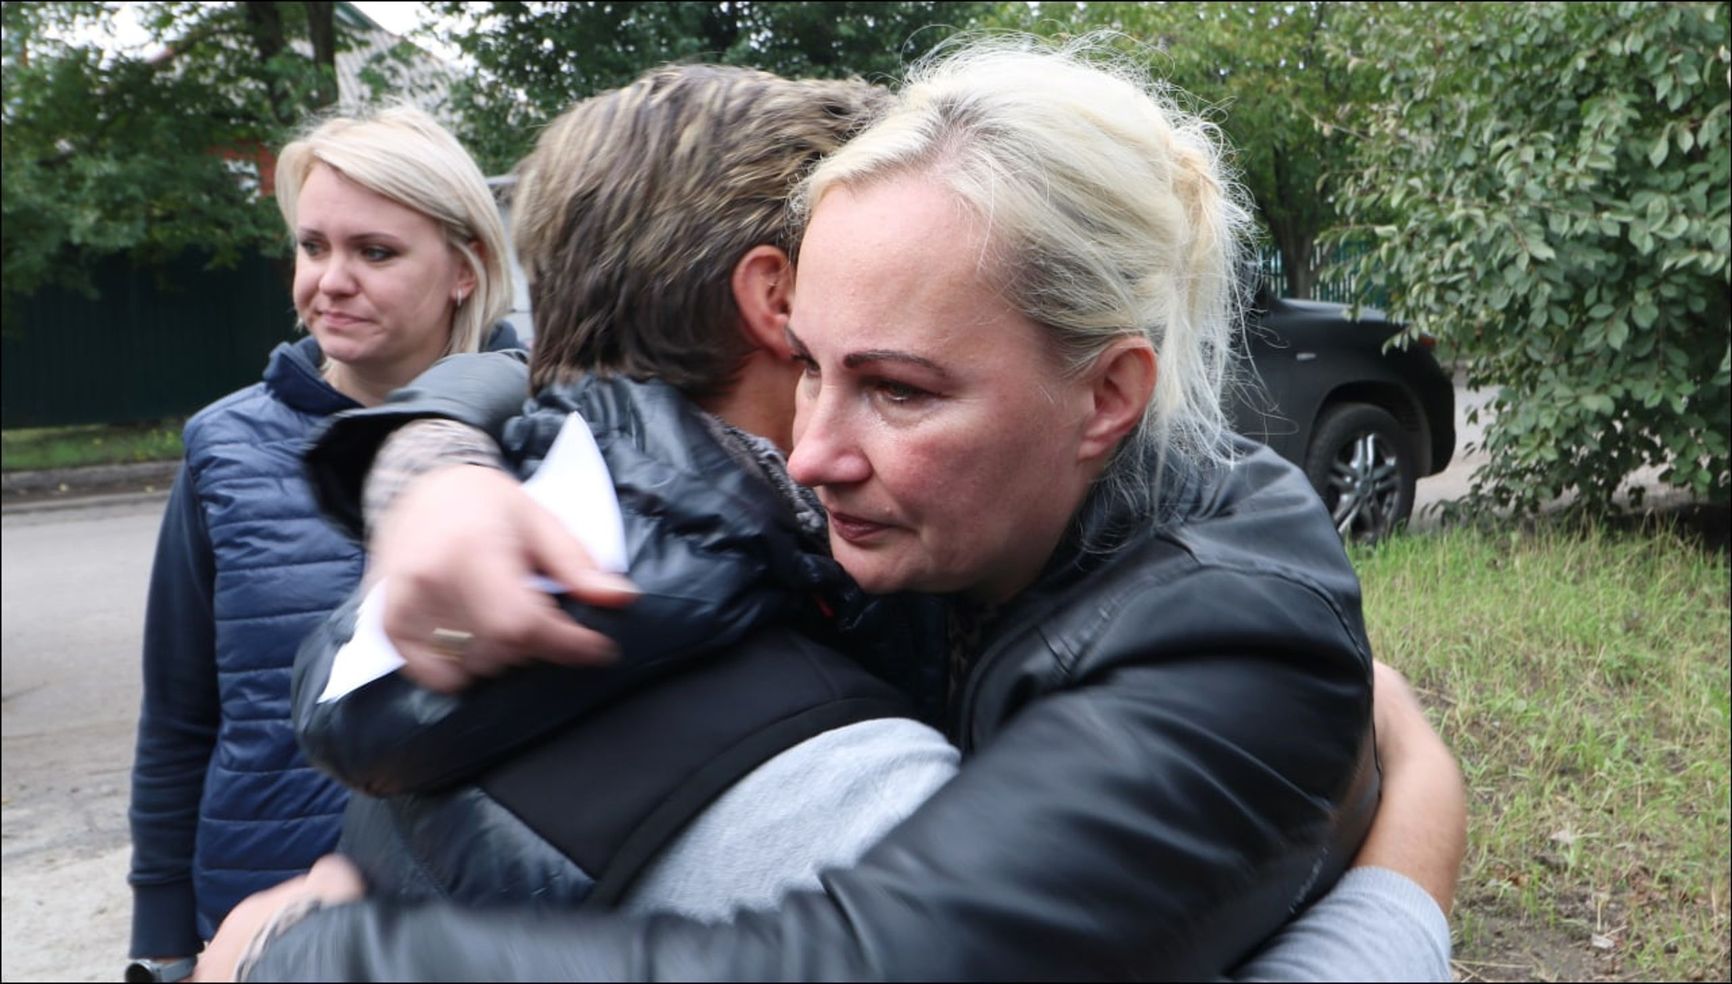 Kilintz and Kolbasnikova embrace, surrounded by ONF activists